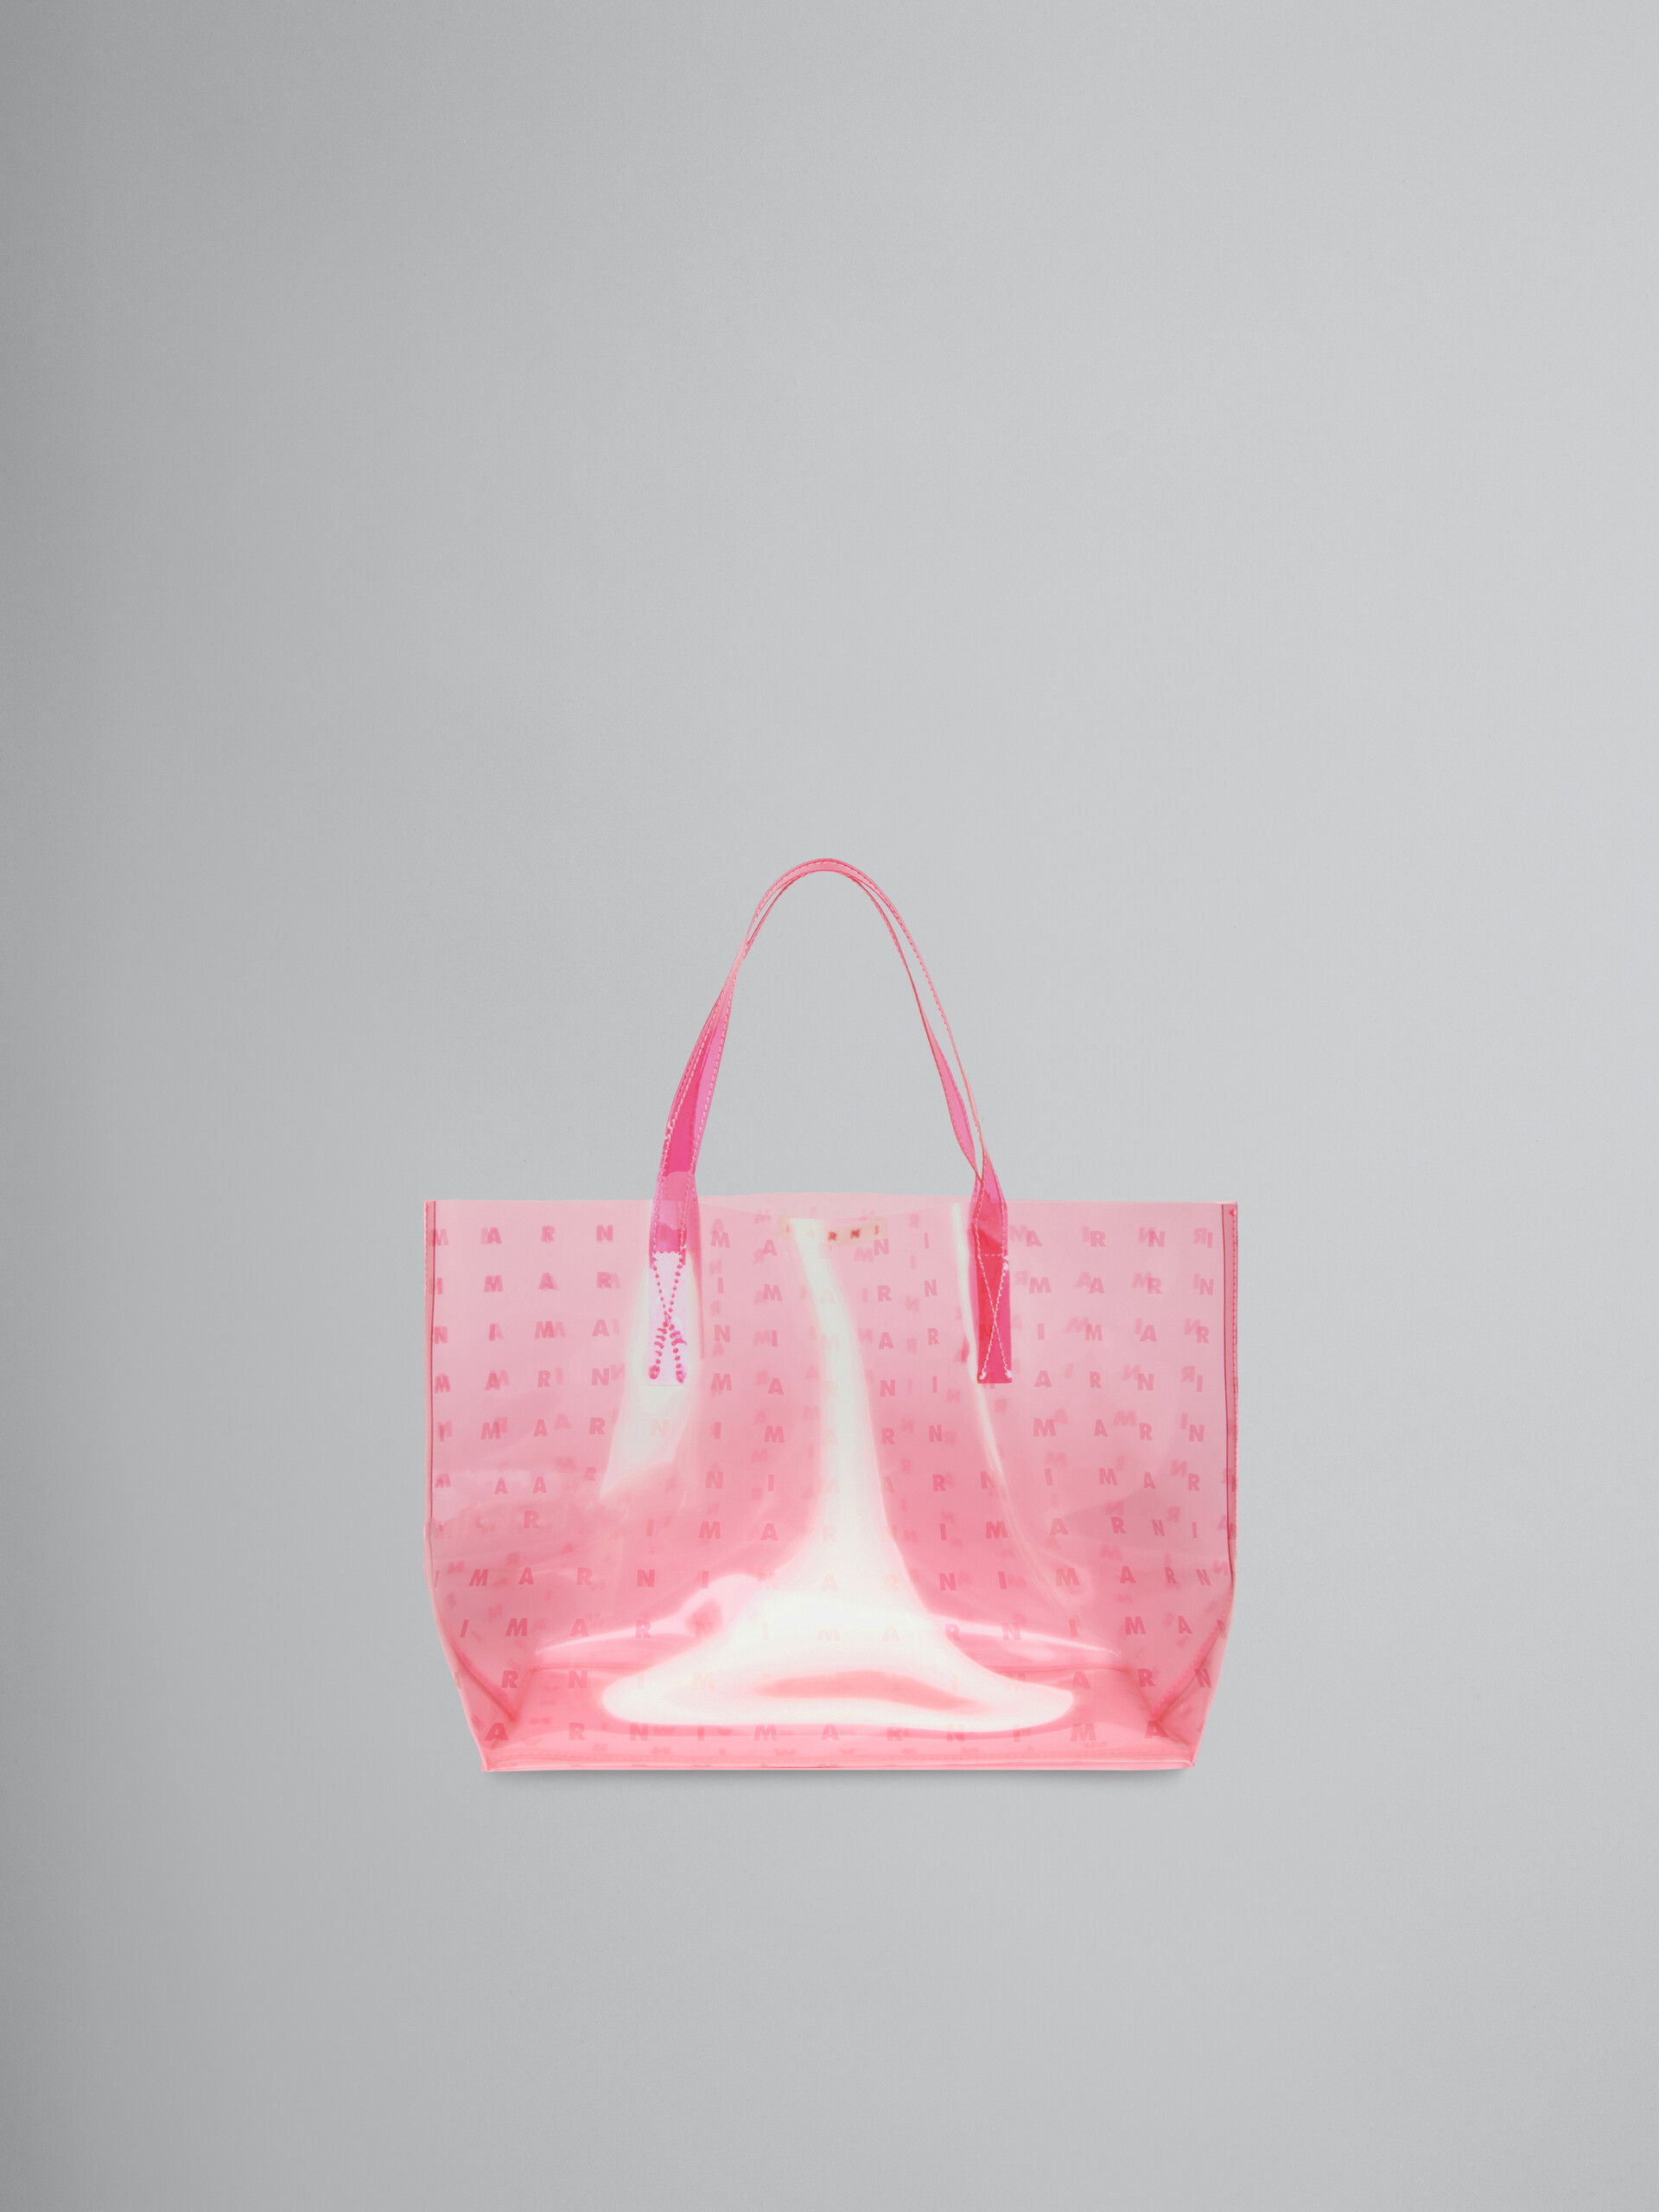 Bolso rosa con logotipo estampado en toda la superficie - Bolsas - Image 1